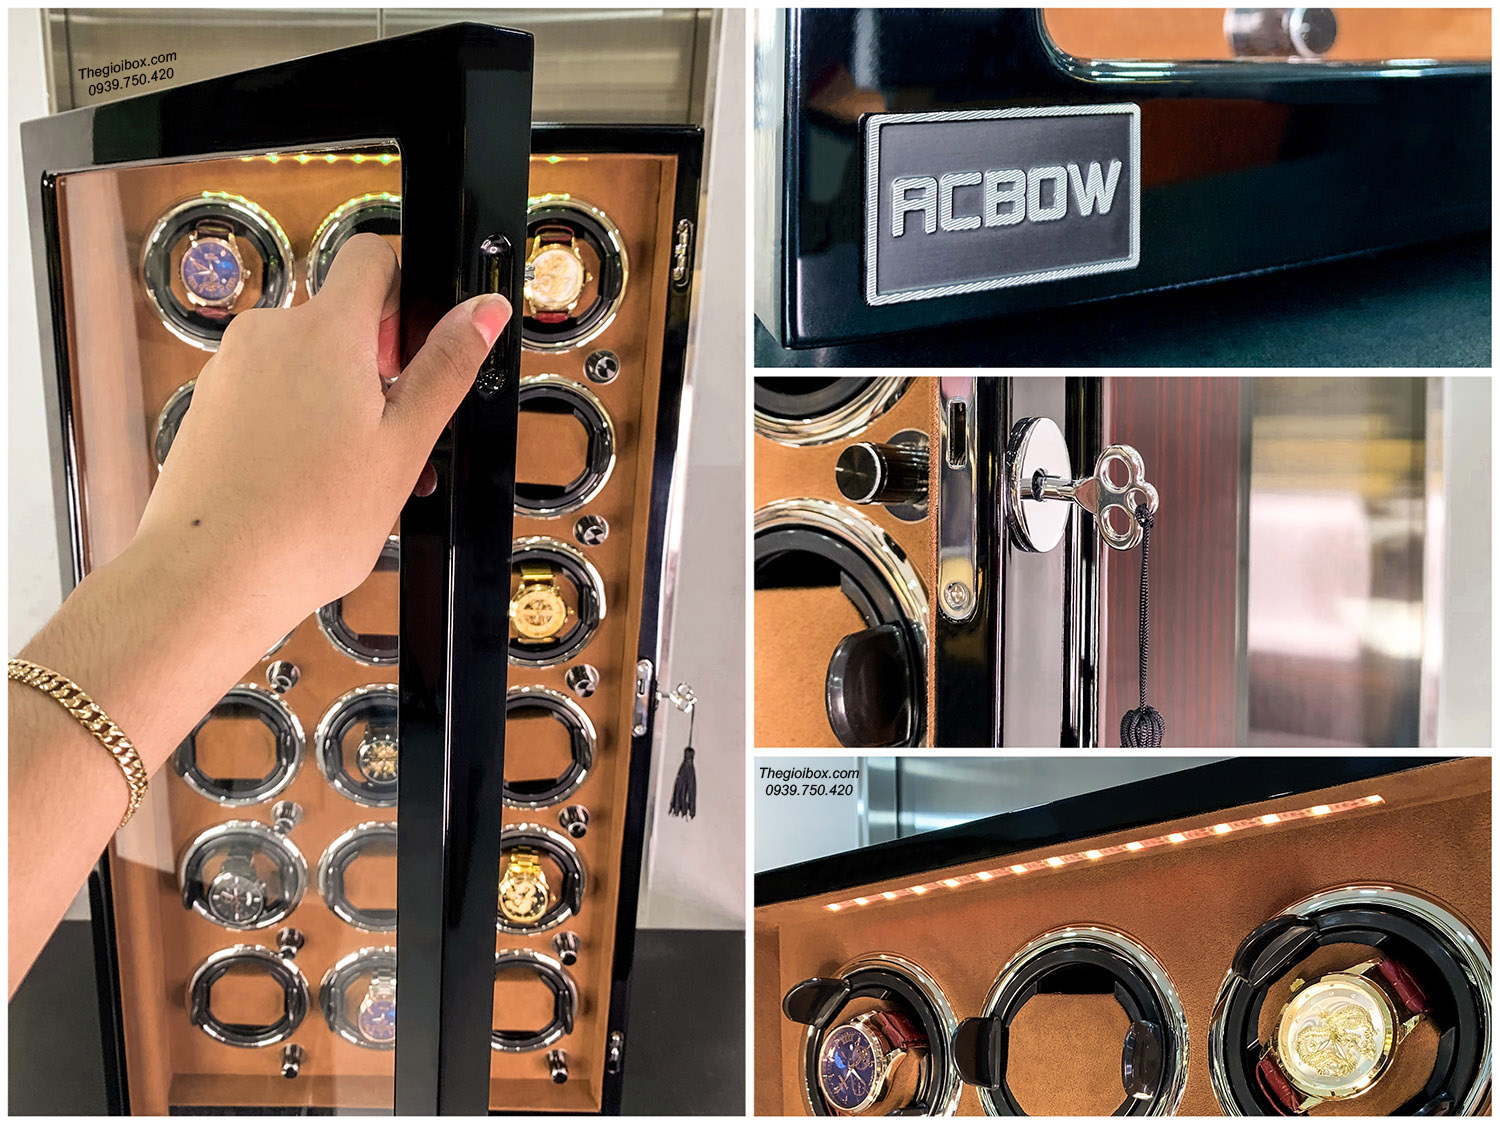 Hộp đồng hồ cơ ACBOW 18 ngăn xoay nội thất nhung nâu + LED + khóa an toàn